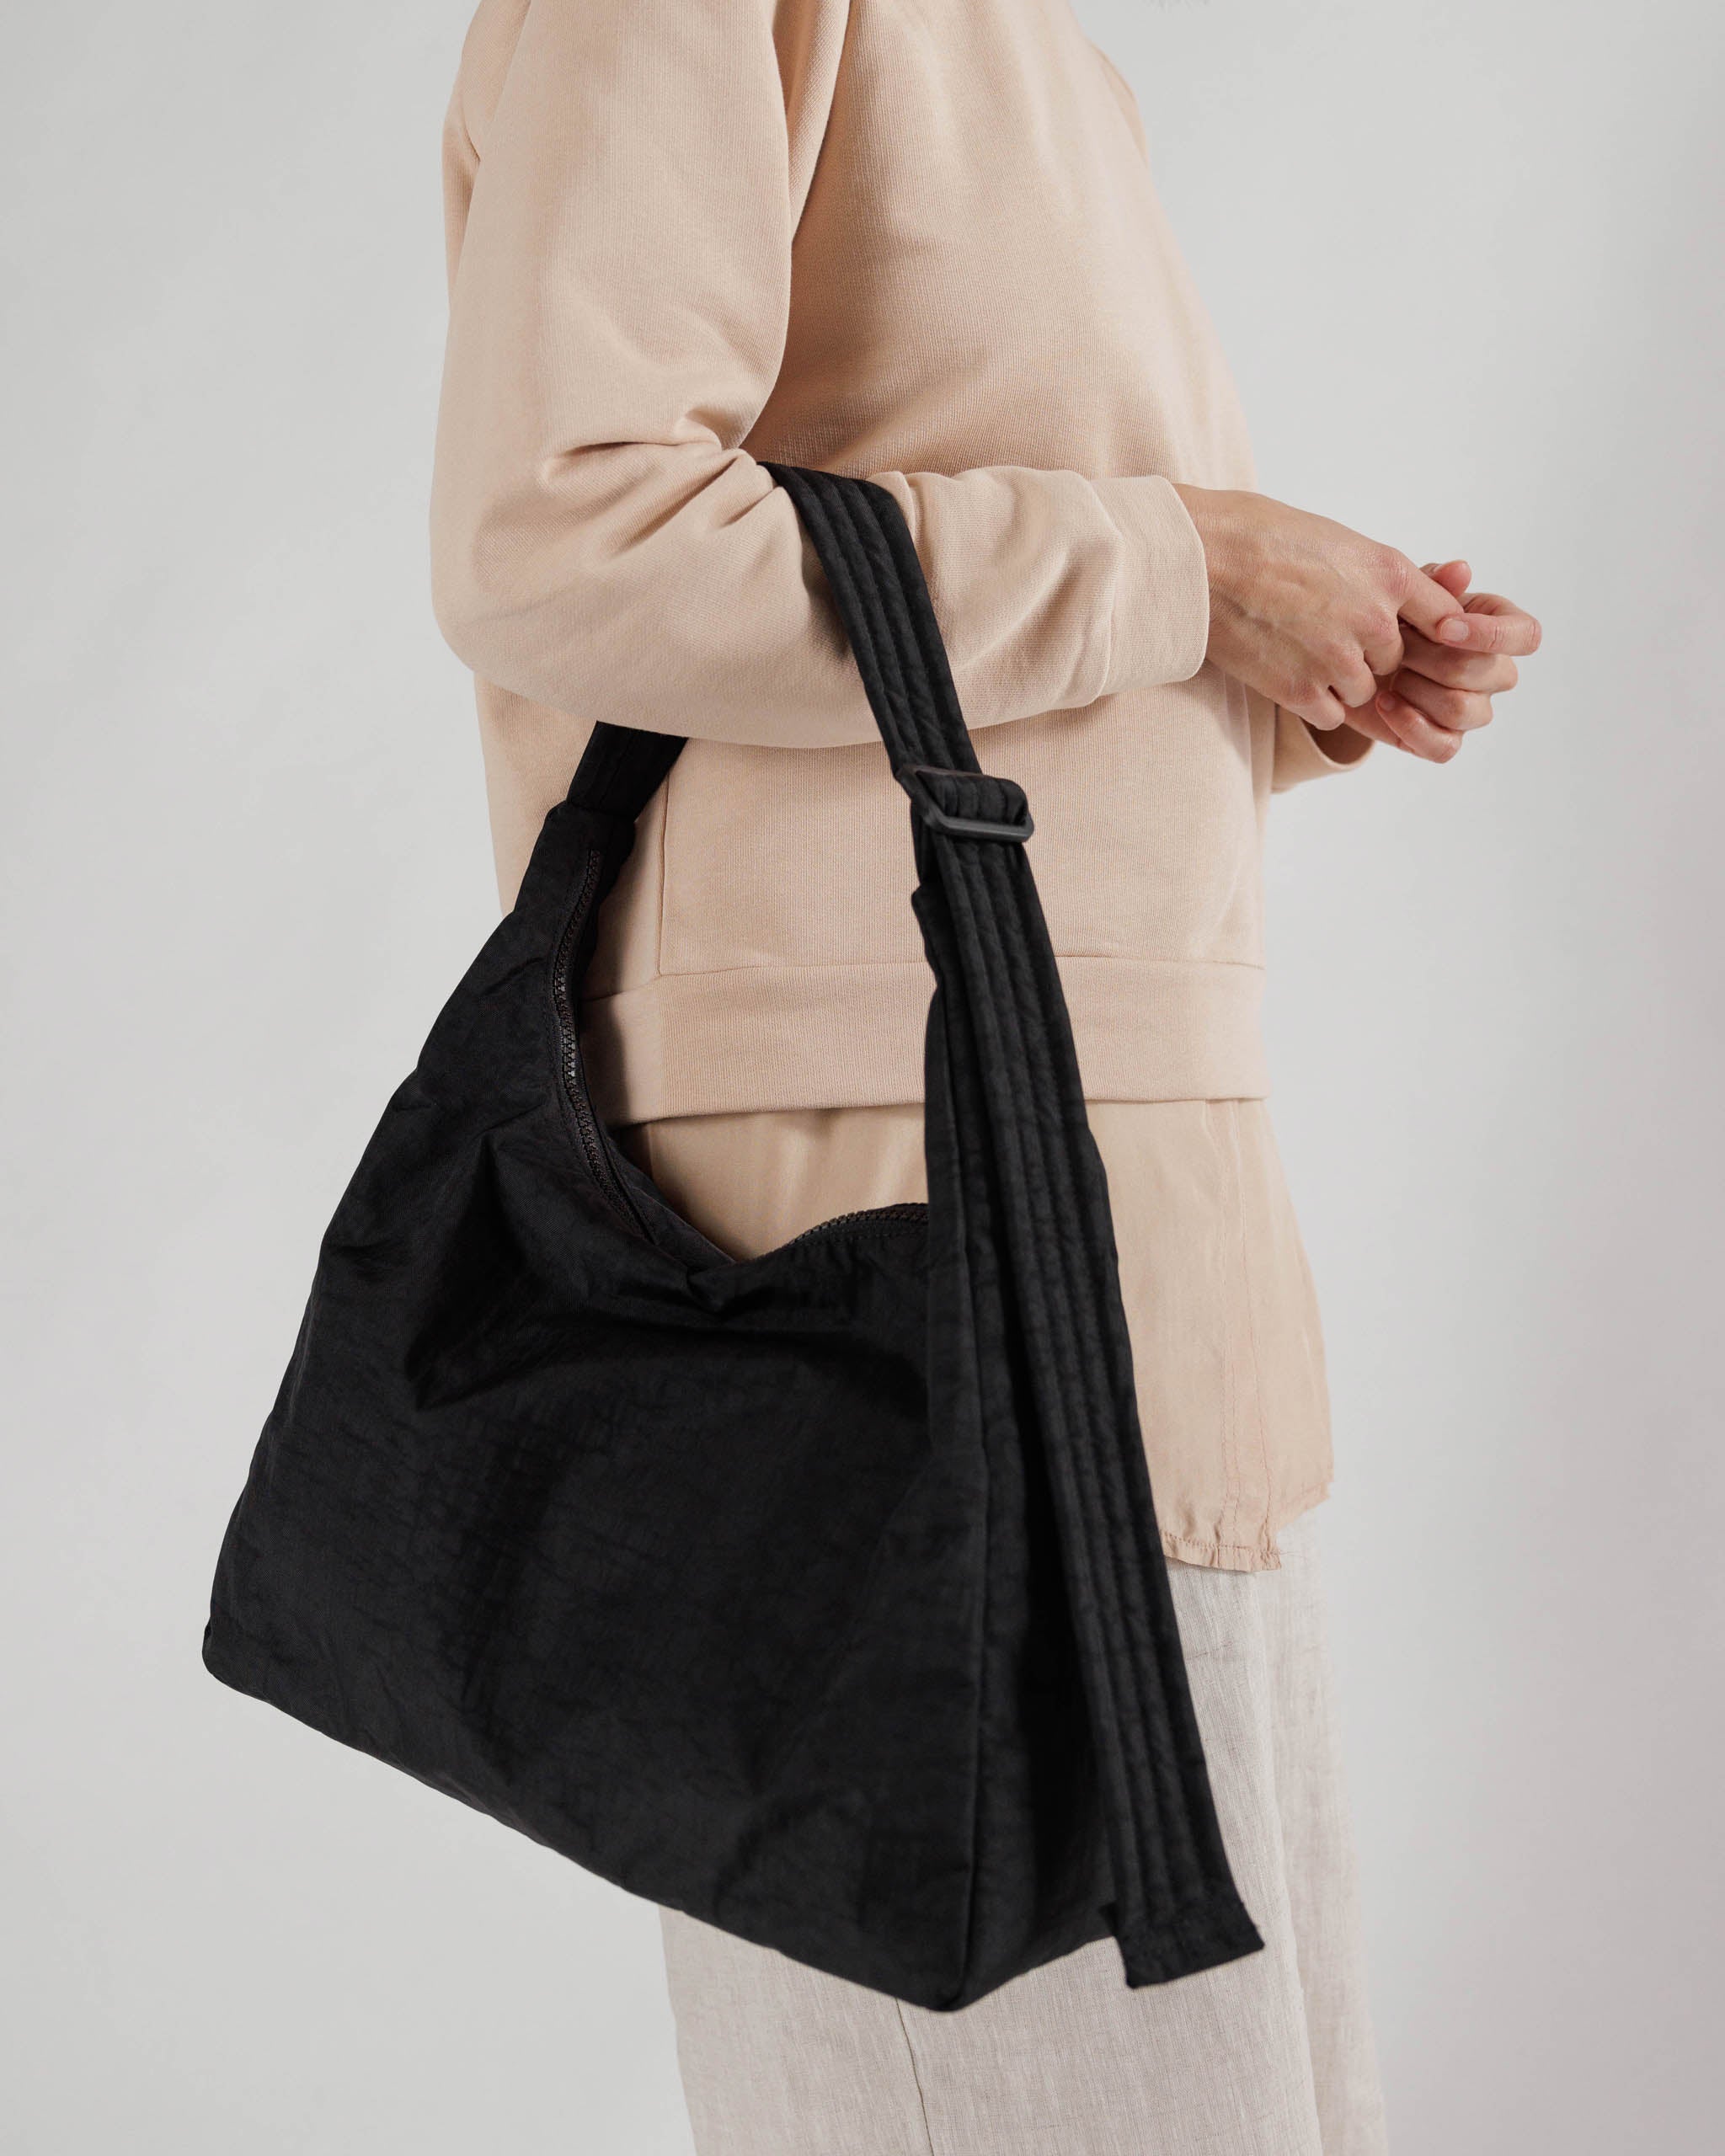 BAGGU, Bags, Baggu Nylon Shoulder Bag Taupe New